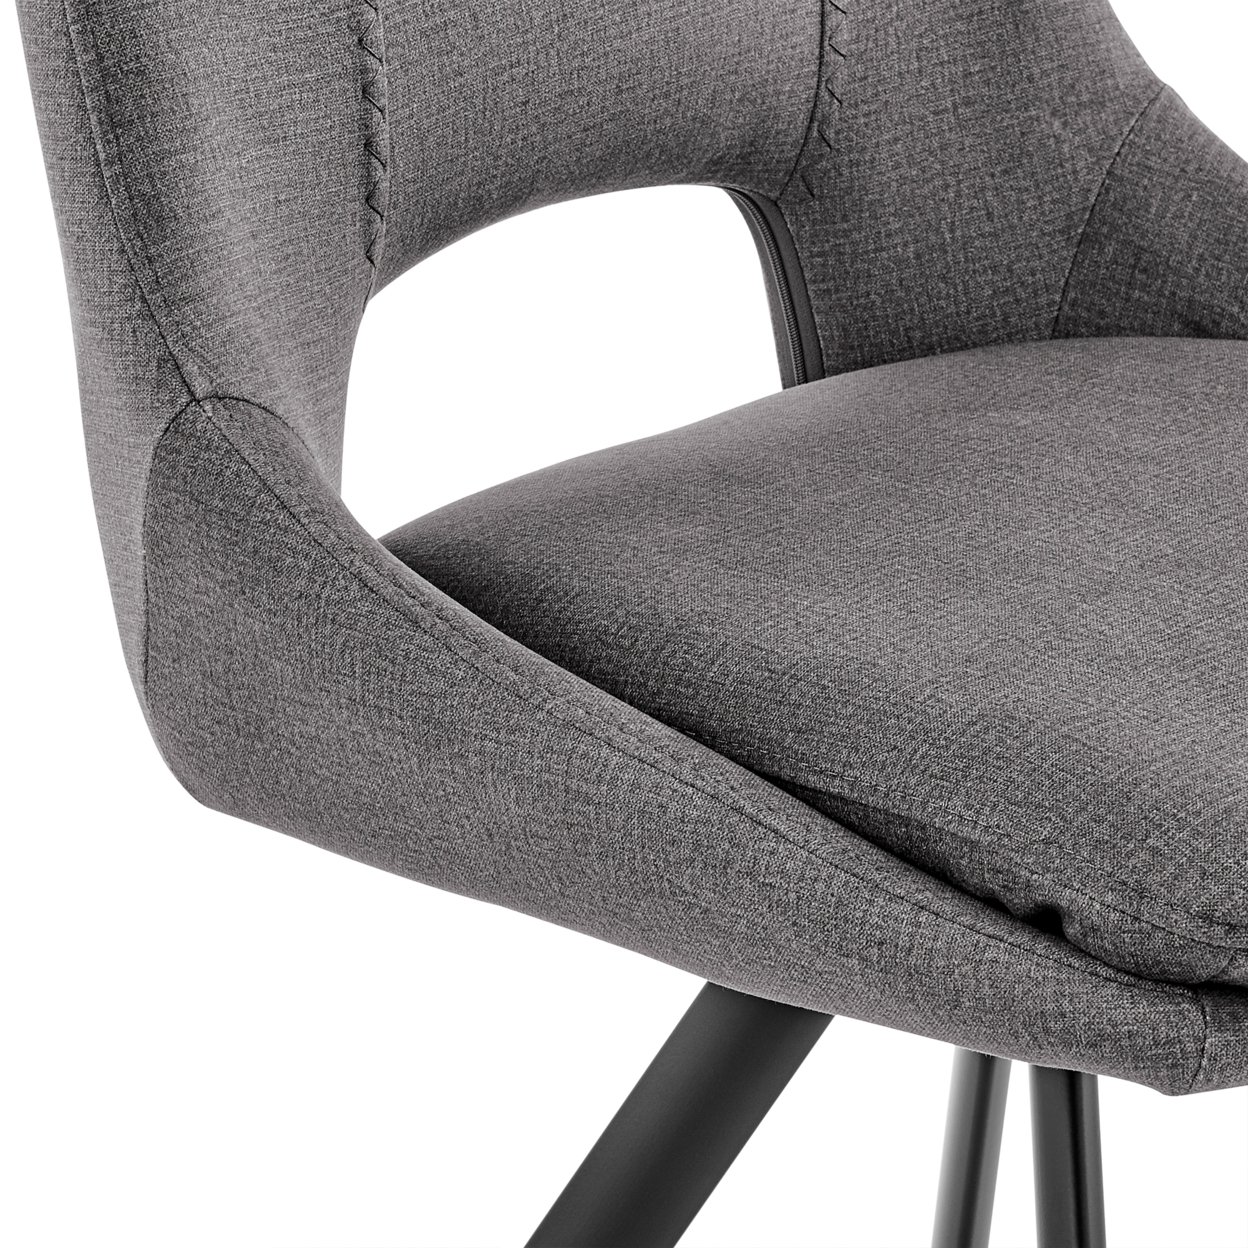 Velvet Upholstered Accent Chair, Set Of 2, Black And Gray- Saltoro Sherpi